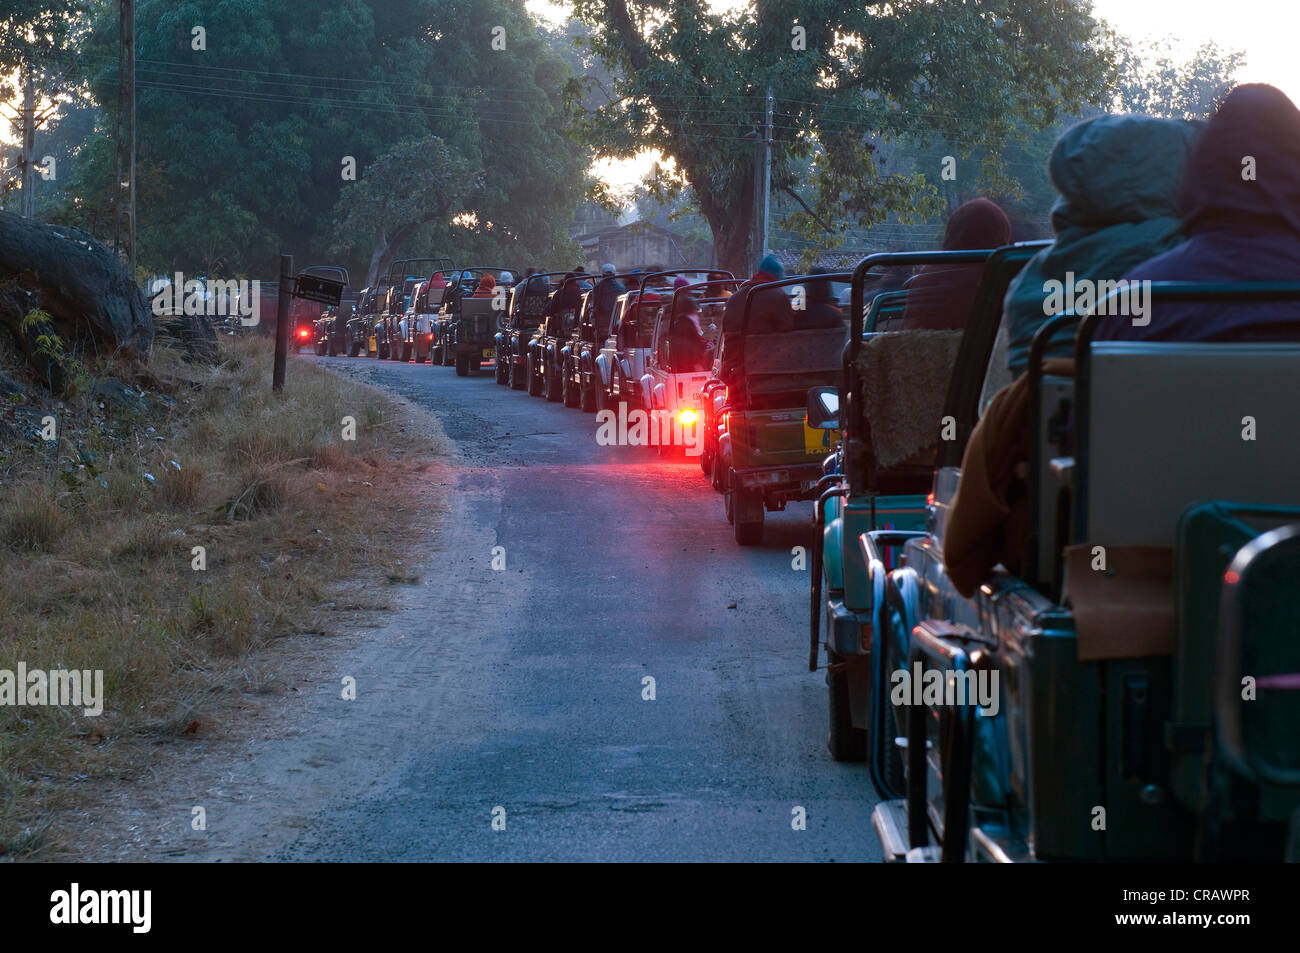 Coda di jeep con turisti, appena prima che i cancelli del parco sono aperti, Parco Nazionale di Kanha, Madhya Pradesh, India, Asia Foto Stock